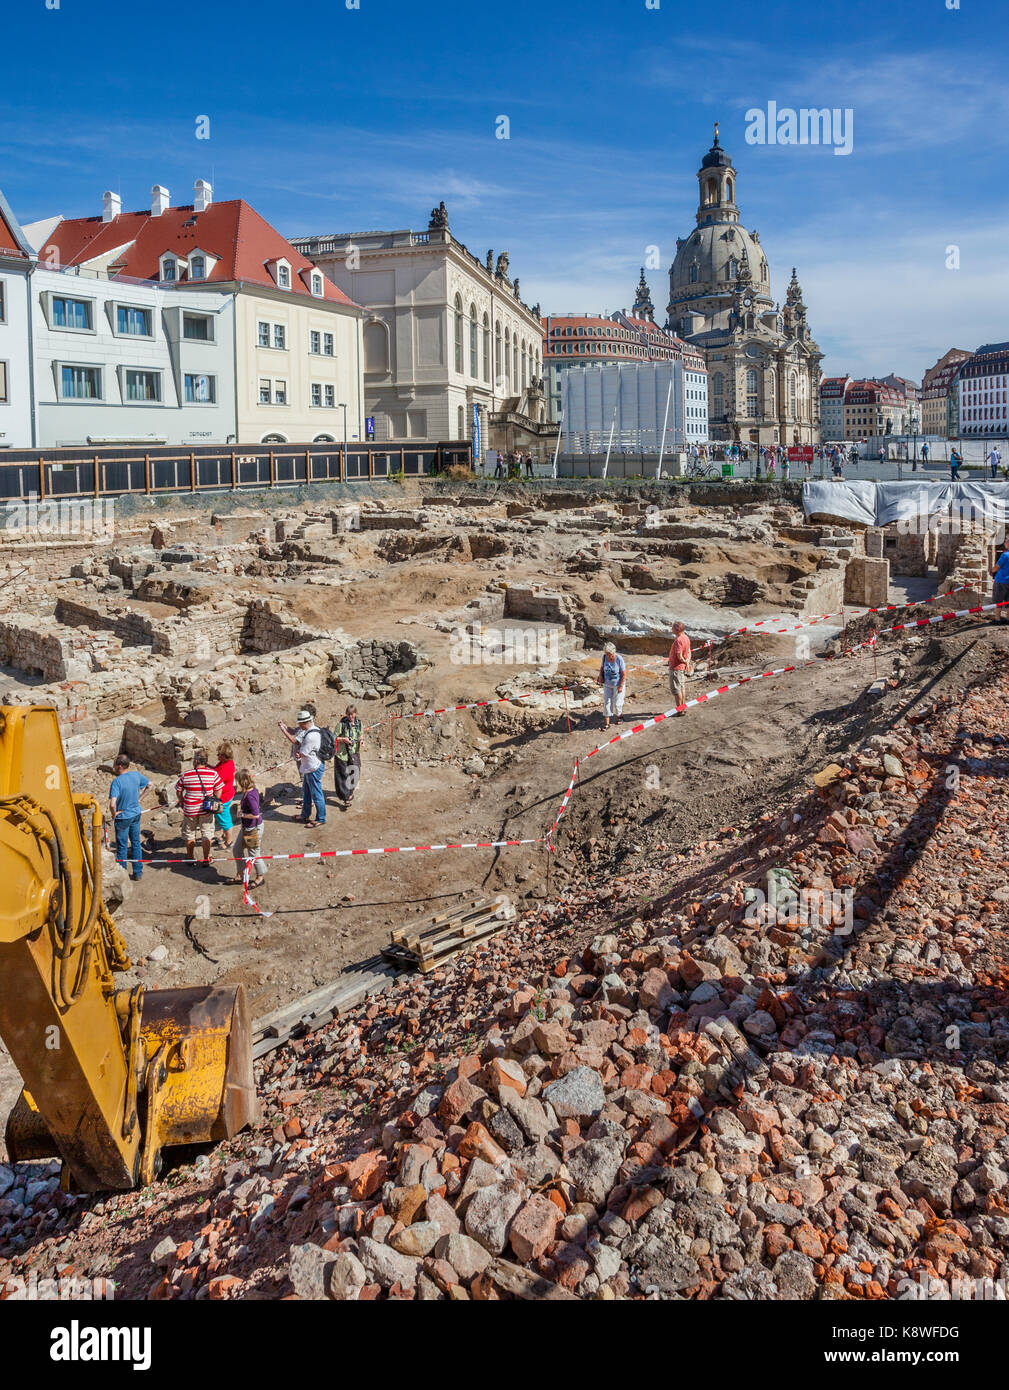 Alemania, en el Estado federado de Sajonia, Dresden, Jüdenhof, excavaciones arqueológicas en el casco antiguo de la ciudad de Dresde en Jüdenhof junto a Neumarkt y Frauenkirche Foto de stock